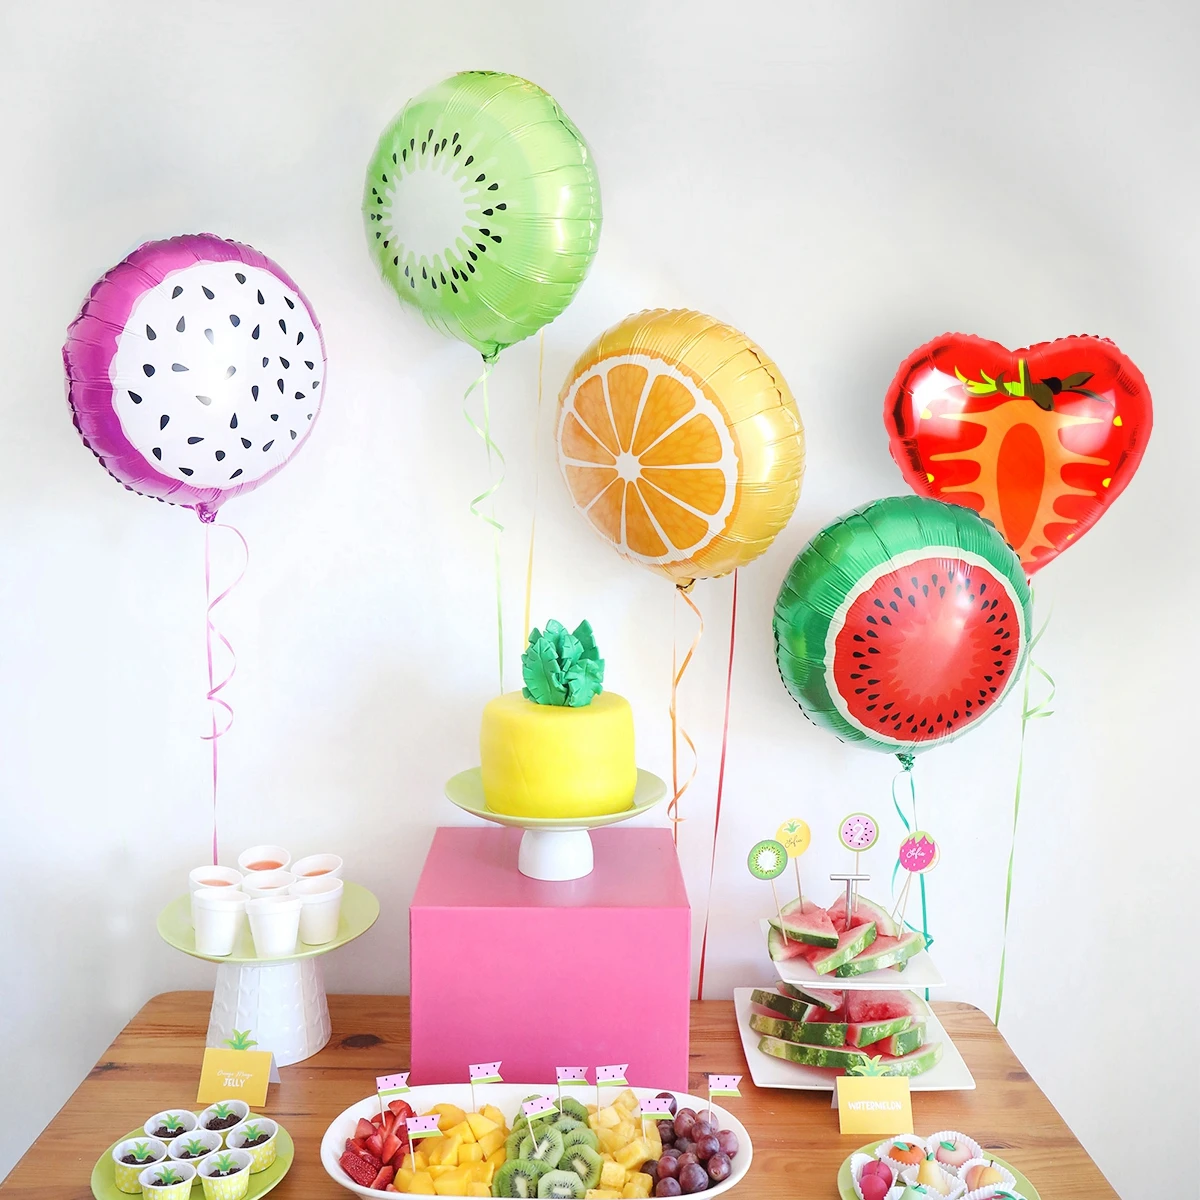 QIFU 5 шт./партия фрукты алюминиевые воздушные шары День рождения украшения Дети Babyshower мальчик девочка гелиевый шарик из фольги воздушные шары для дня рождения